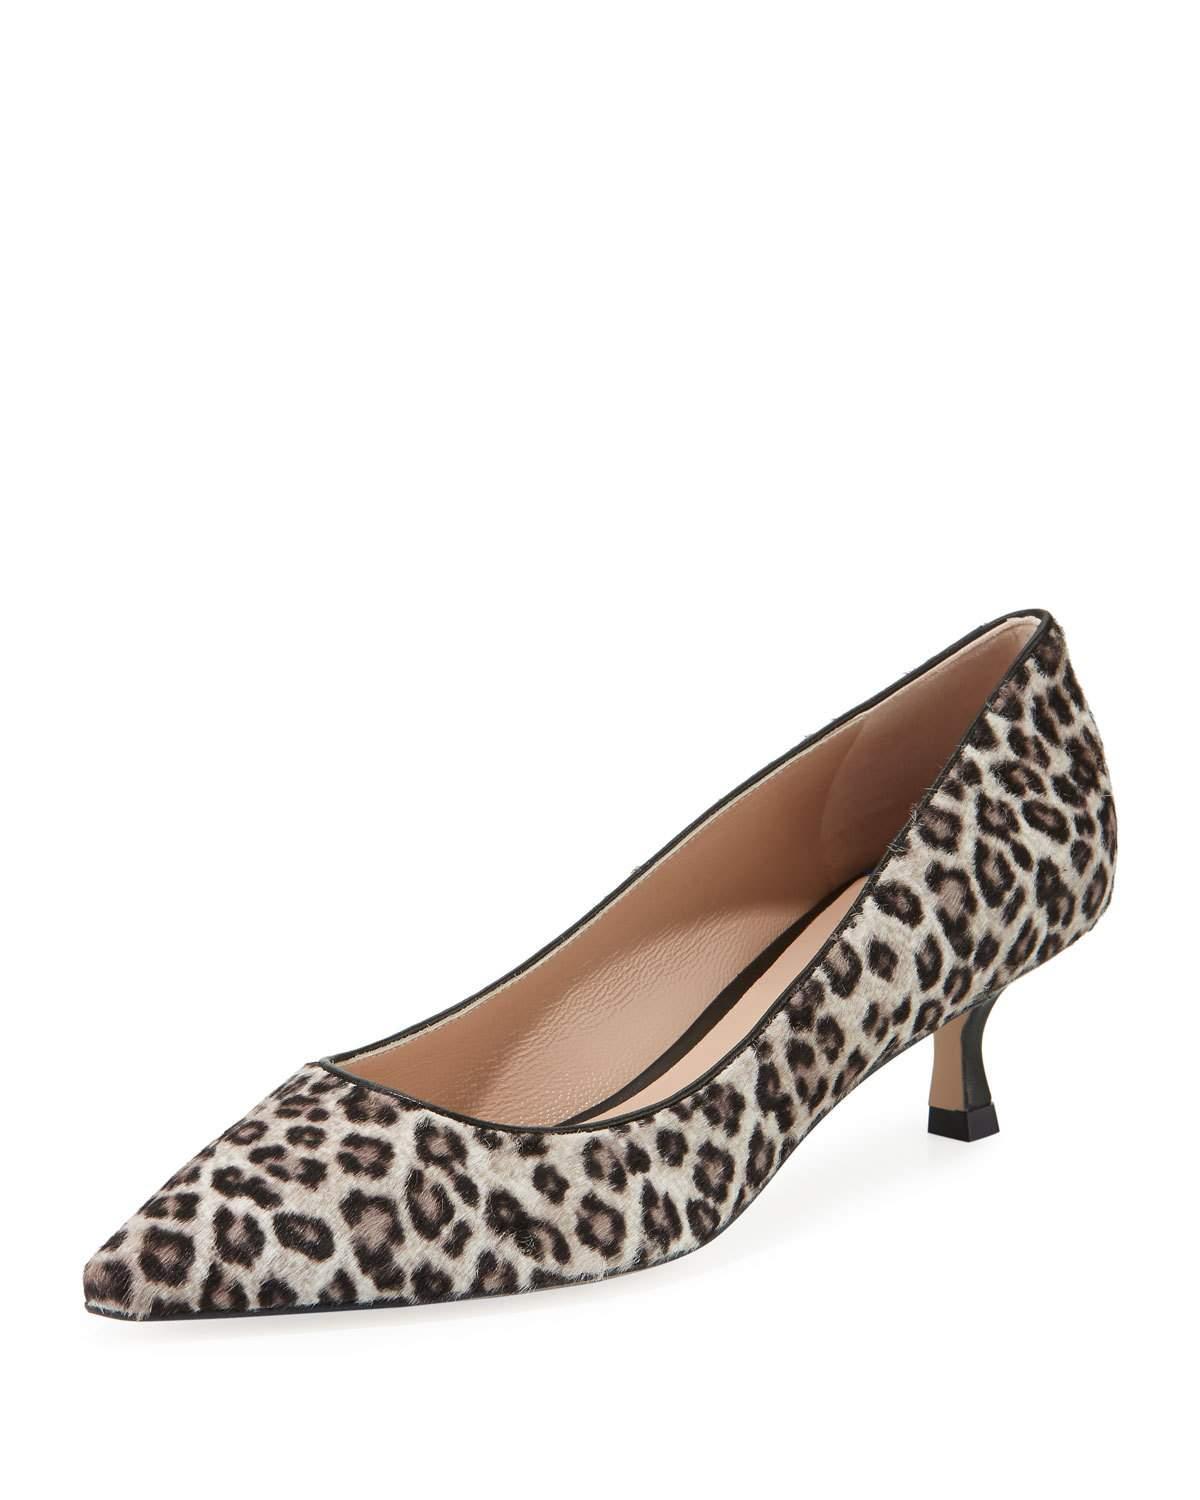 leopard low heel pumps hot cea6c 35ff3